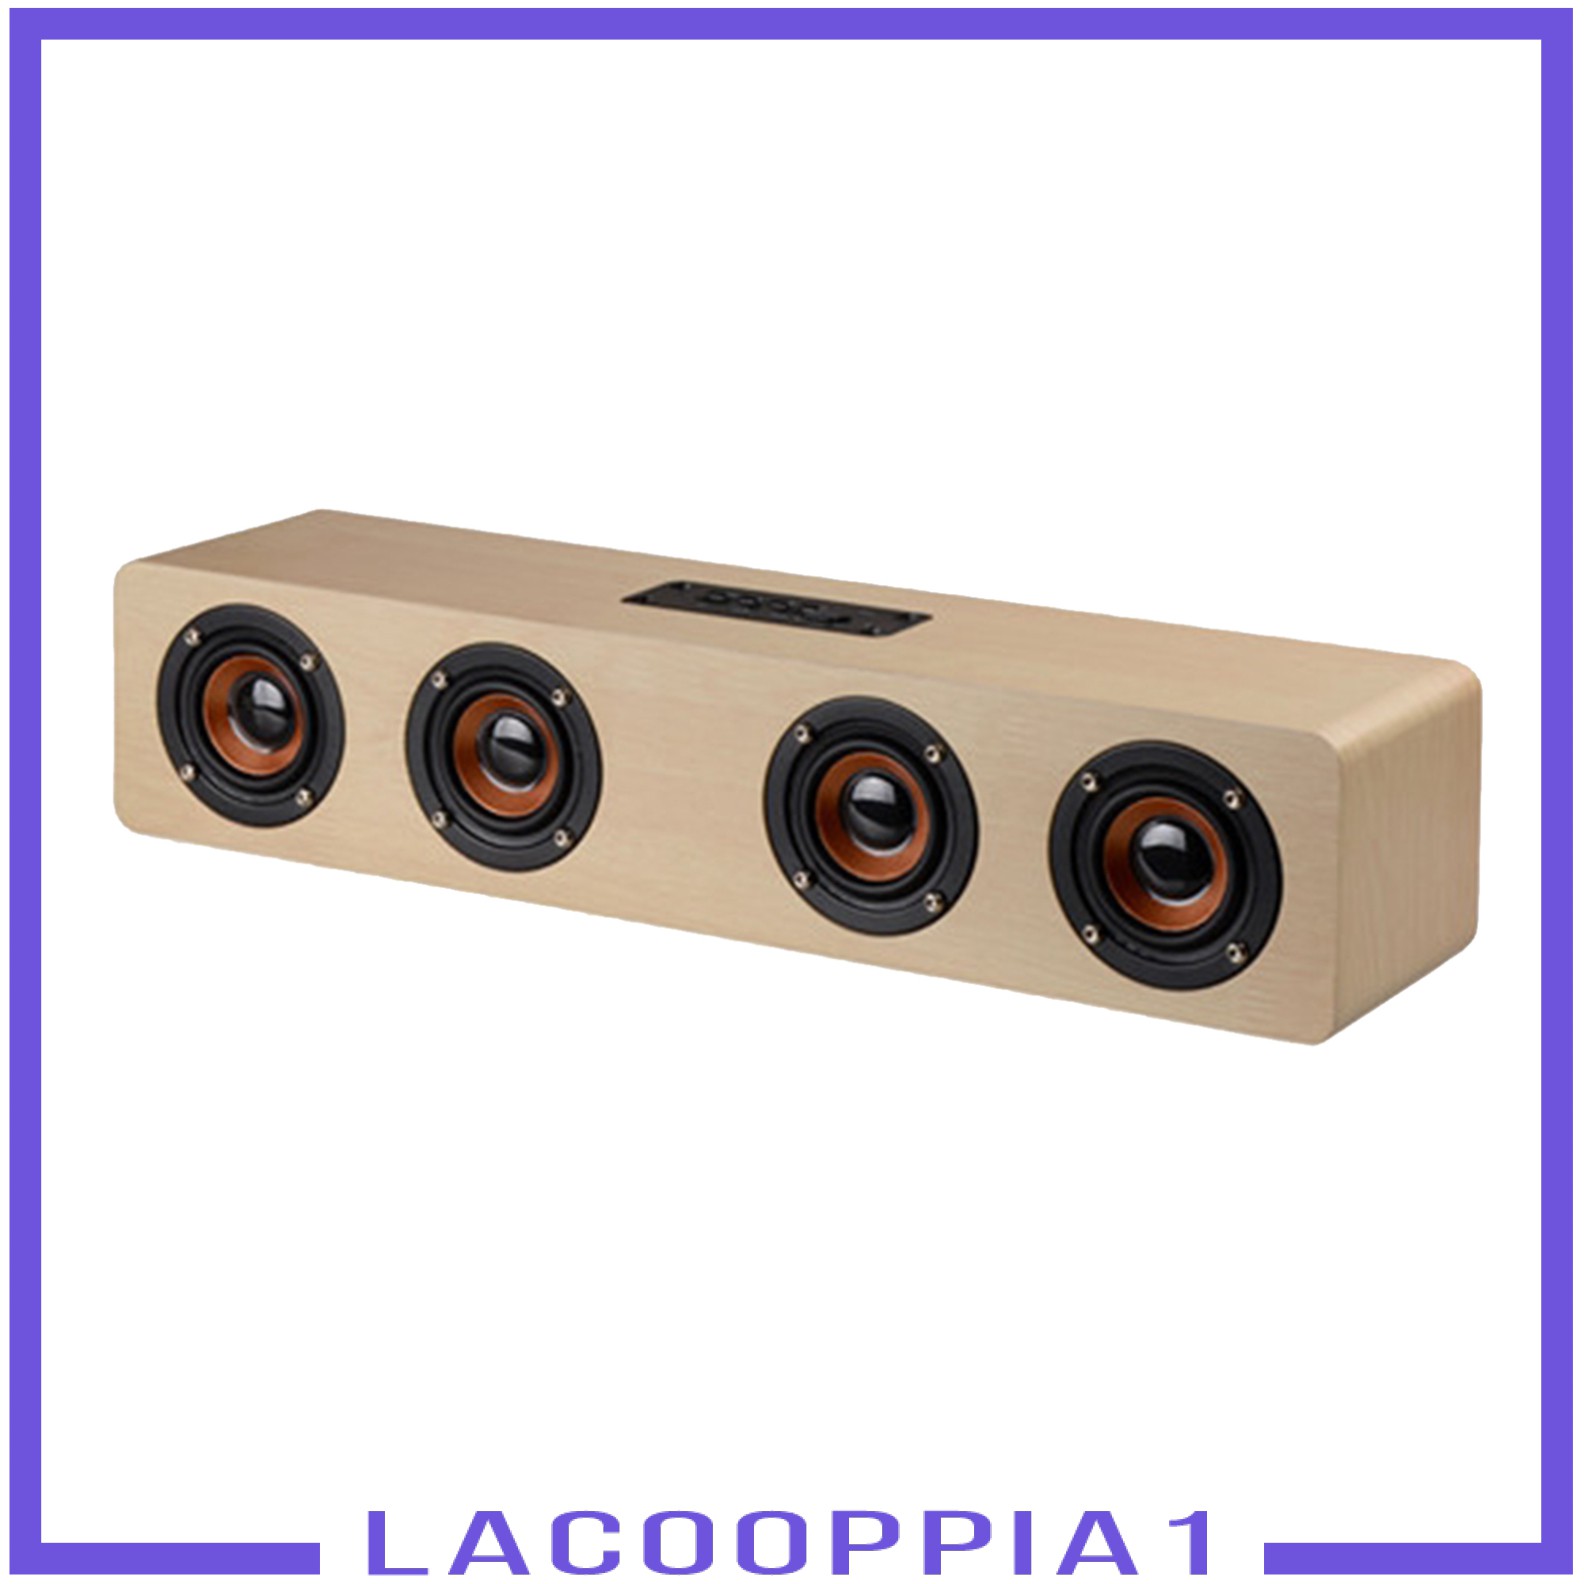 Loa Bluetooth Lapopopia1 Bằng Gỗ Âm Thanh Siêu Mạnh Kích Thước 380mm